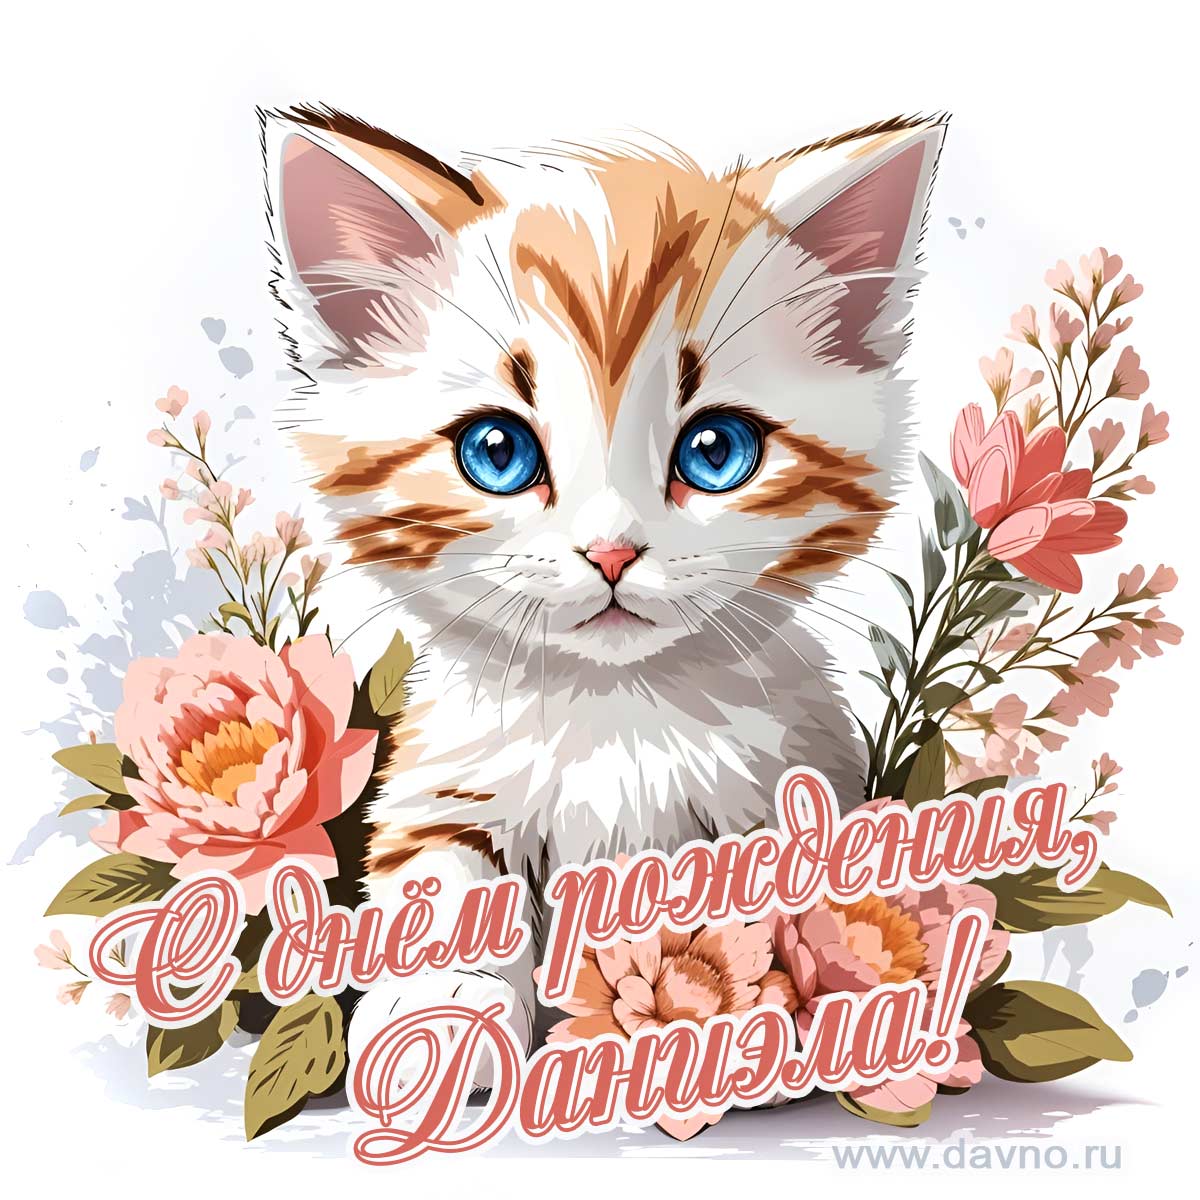 Новая рисованная поздравительная открытка для Даниэлы с котёнком